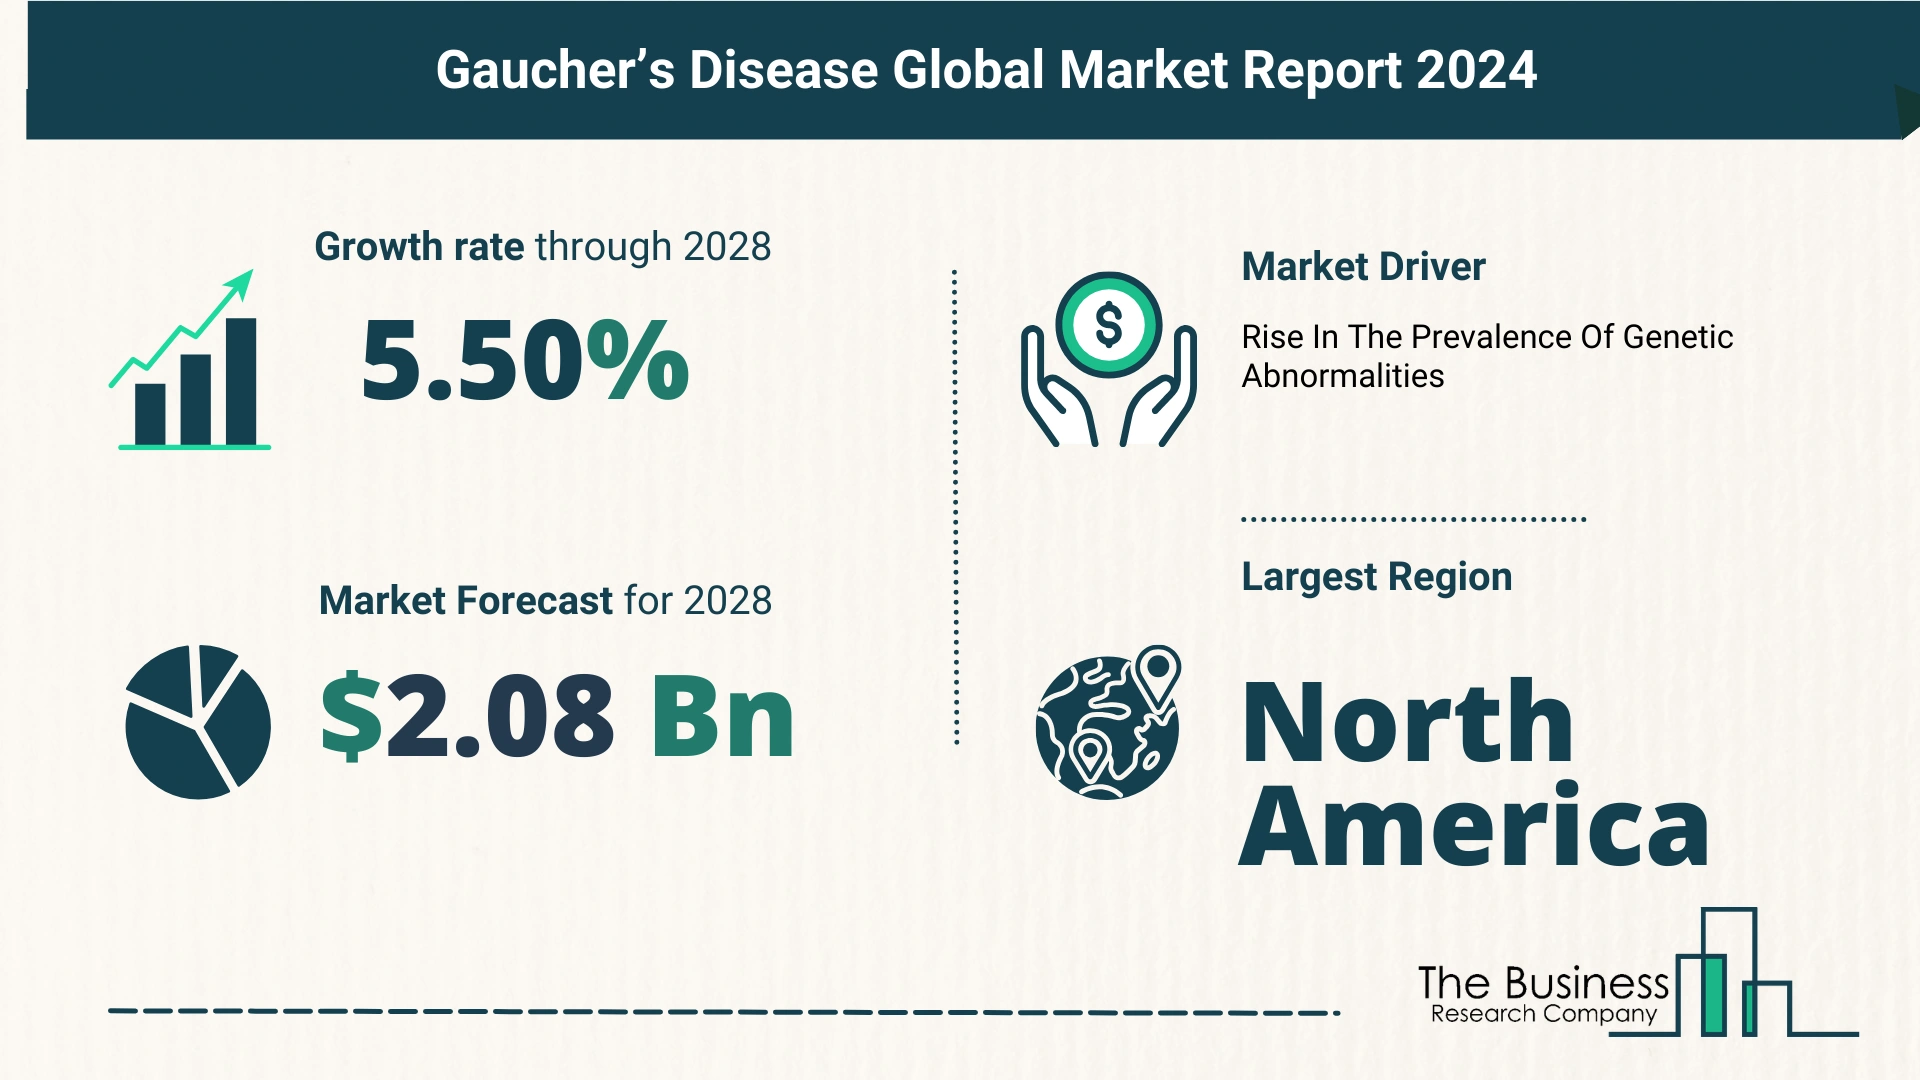 Global Gaucher’s Disease Market Size